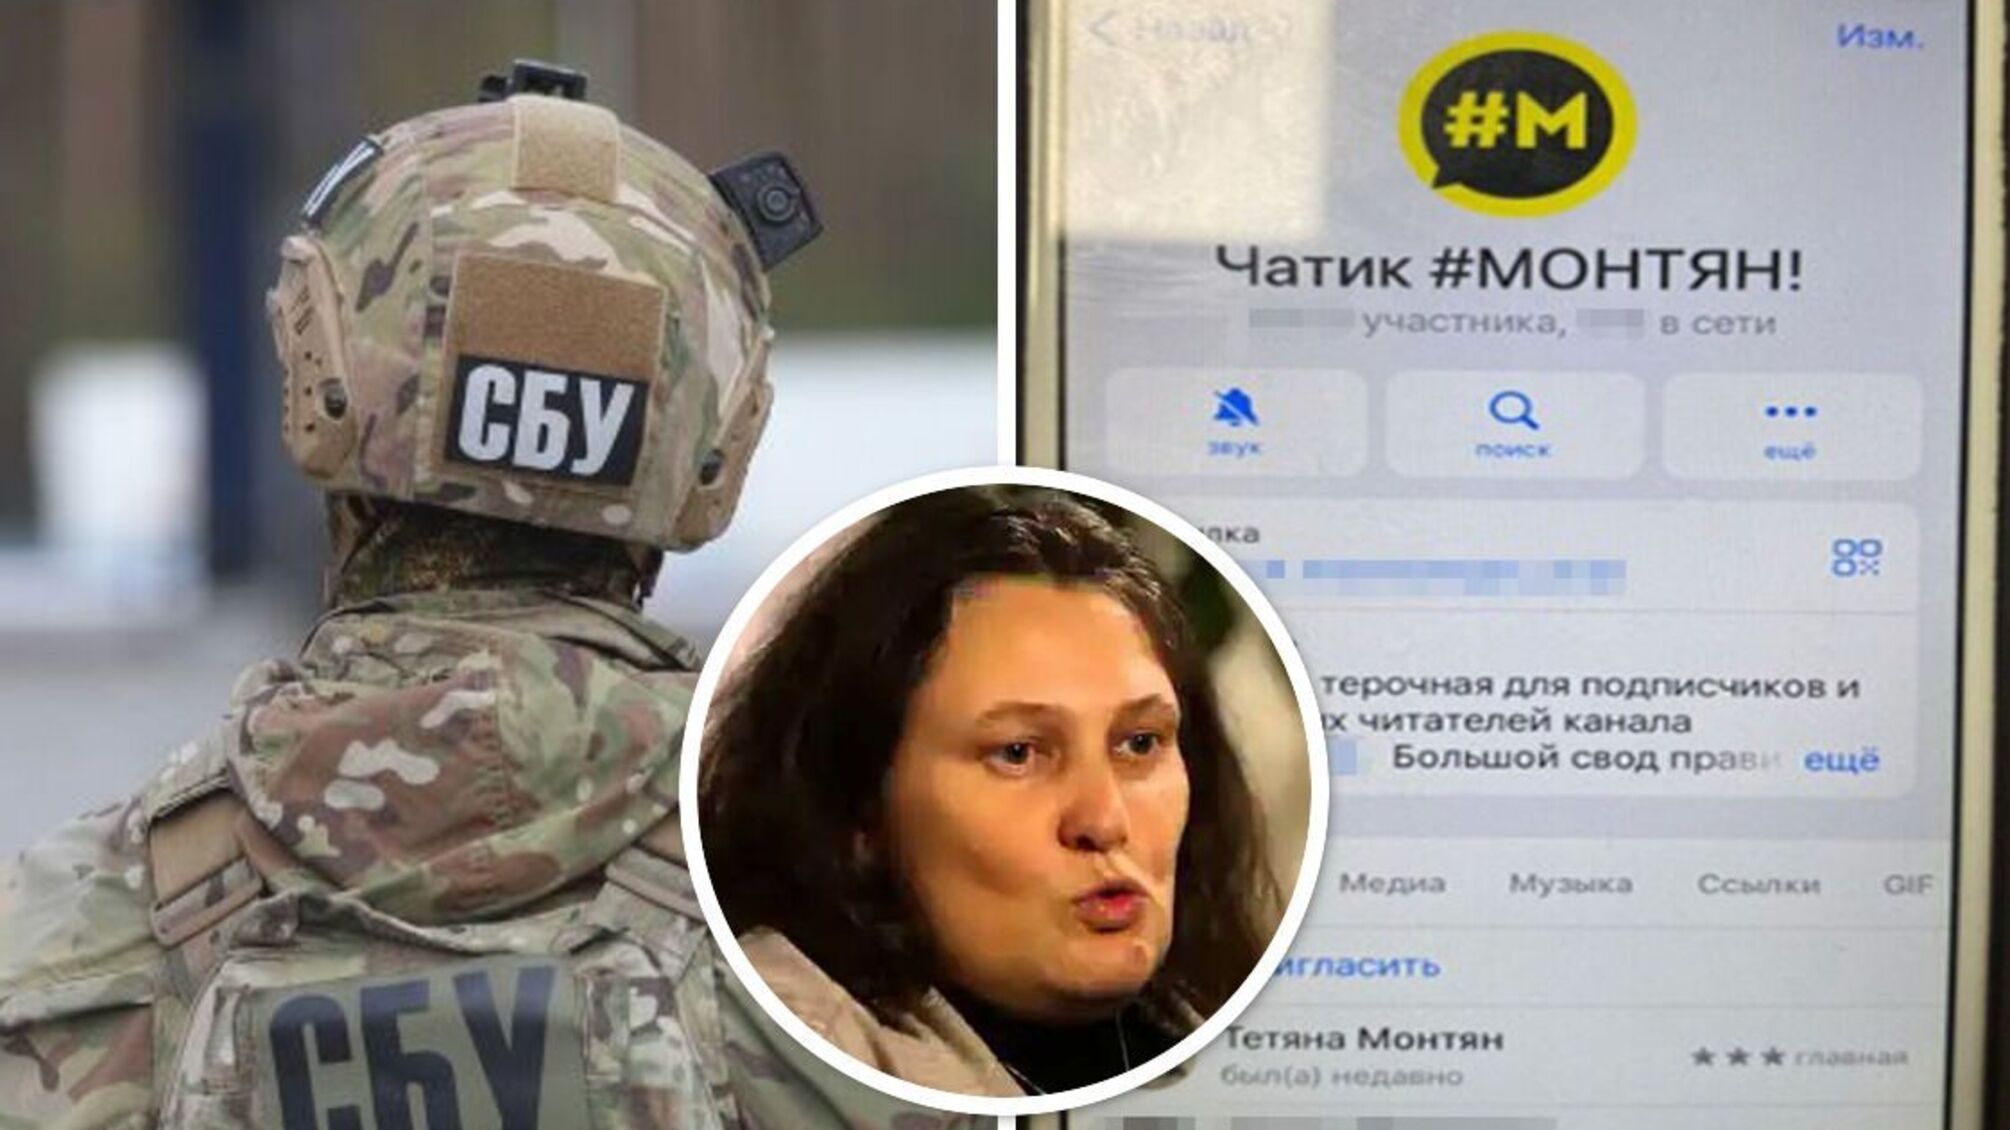 Распространял кремлевскую пропаганду: в Киеве поймали пособника предательницы Монтян (фото)